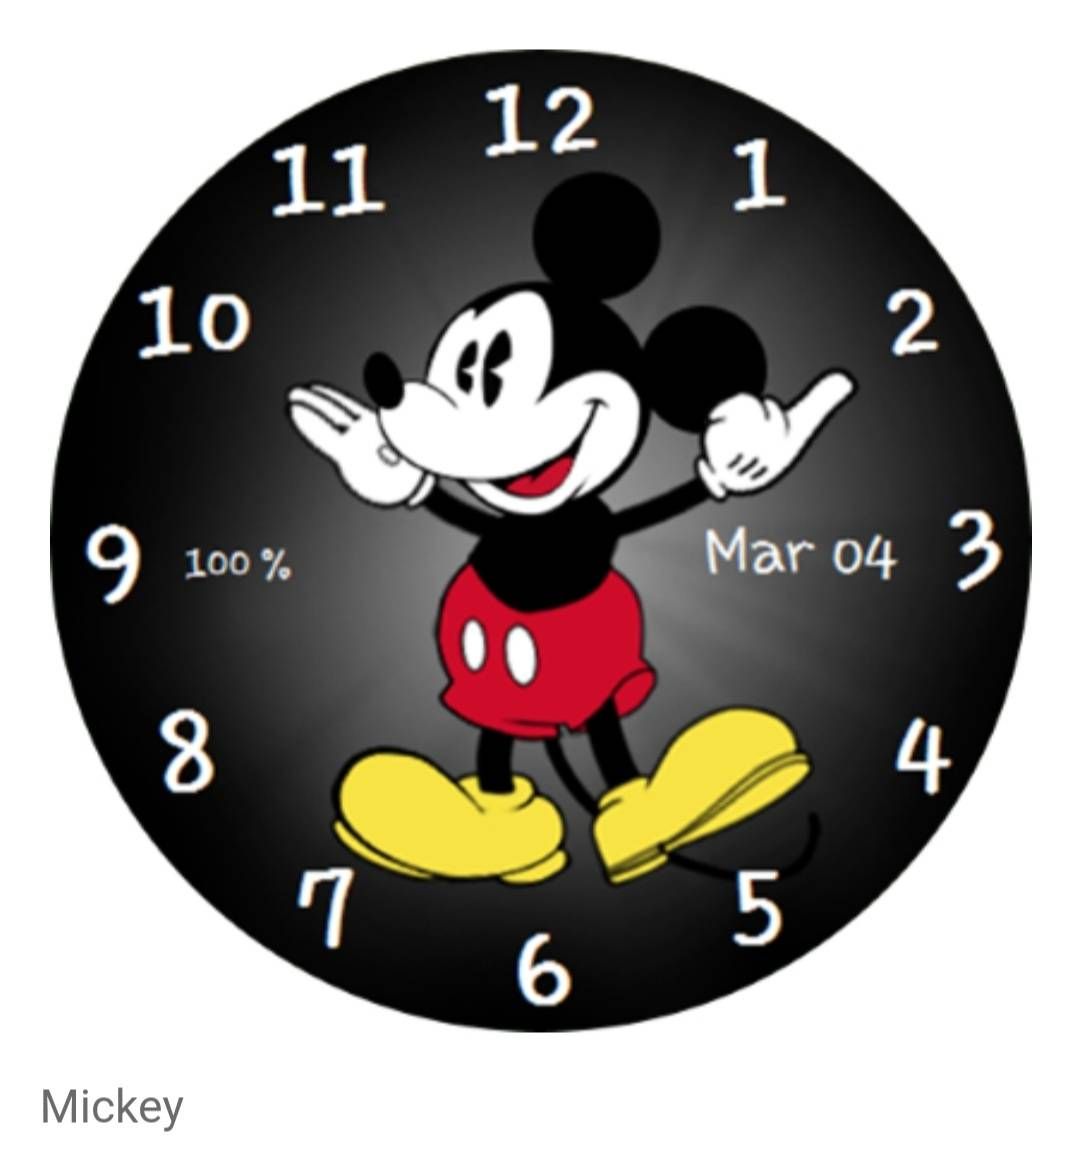 Загрузить циферблаты на часы. Смарт часы с Микки Маусом на циферблате. Циферблат вотч Микки Маус. Циферблат часов Микки Маус. Циферблат Микки Маус для смарт часов.